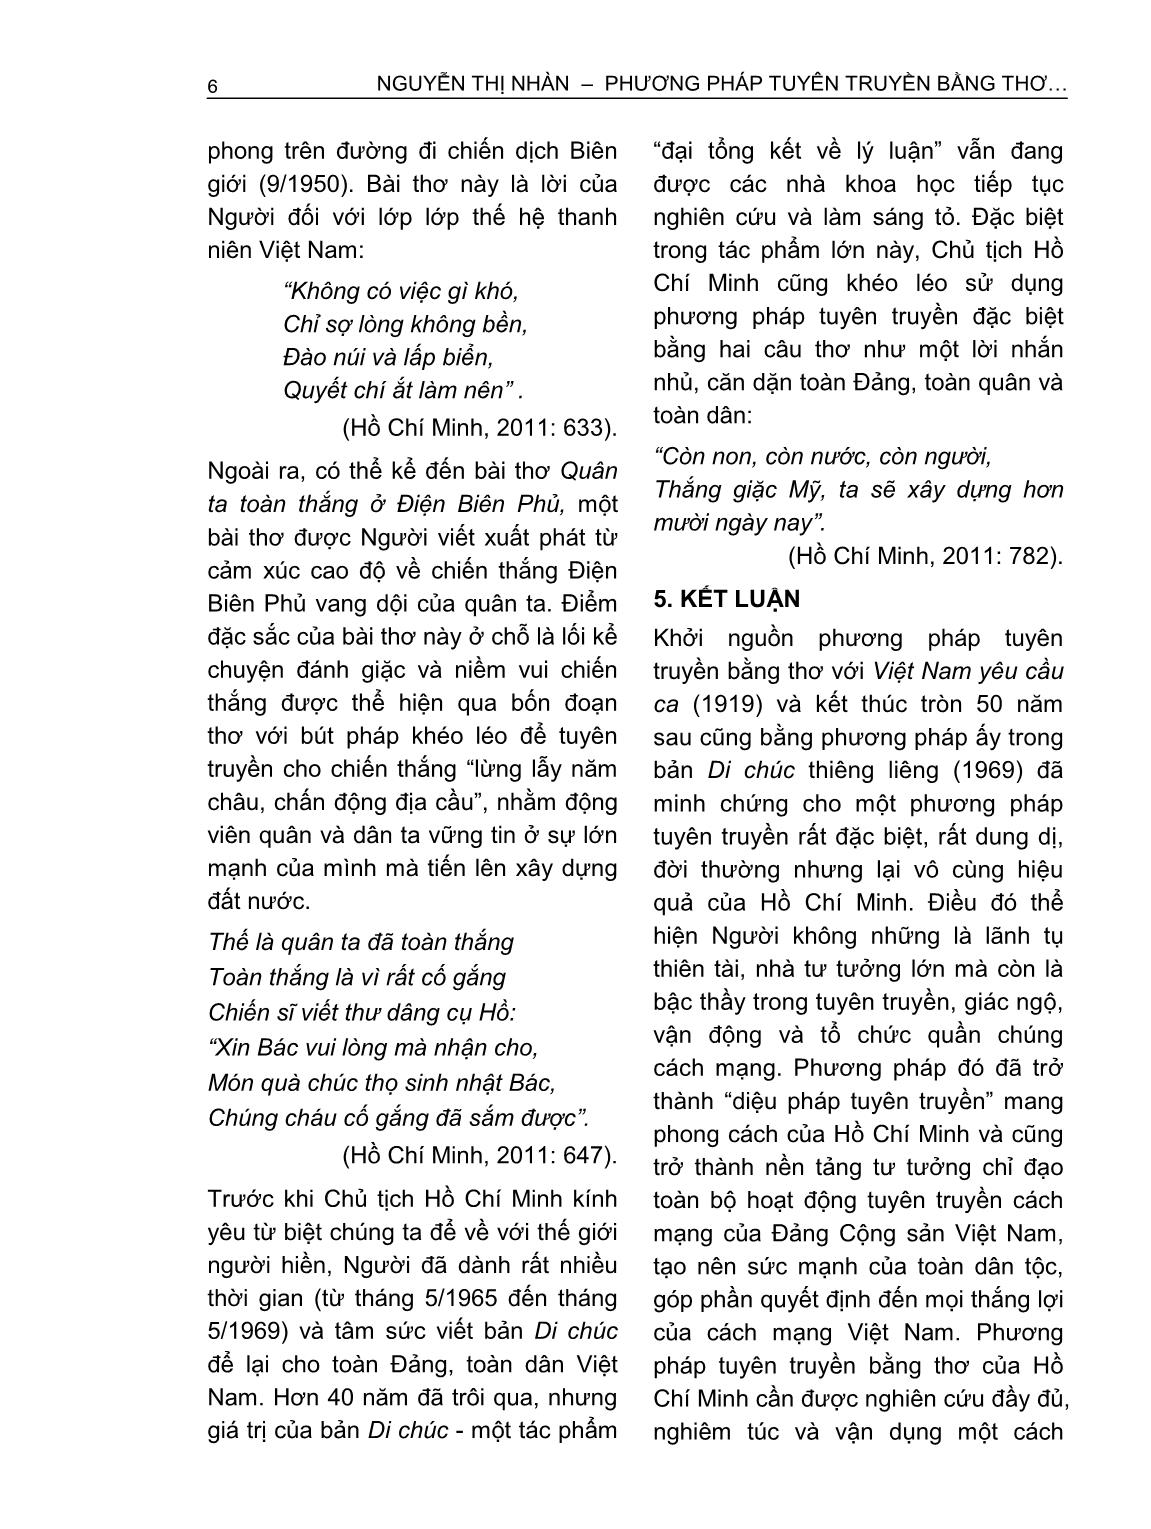 Phương pháp tuyên truyền bằng thơ của Hồ Chí Minh trang 6